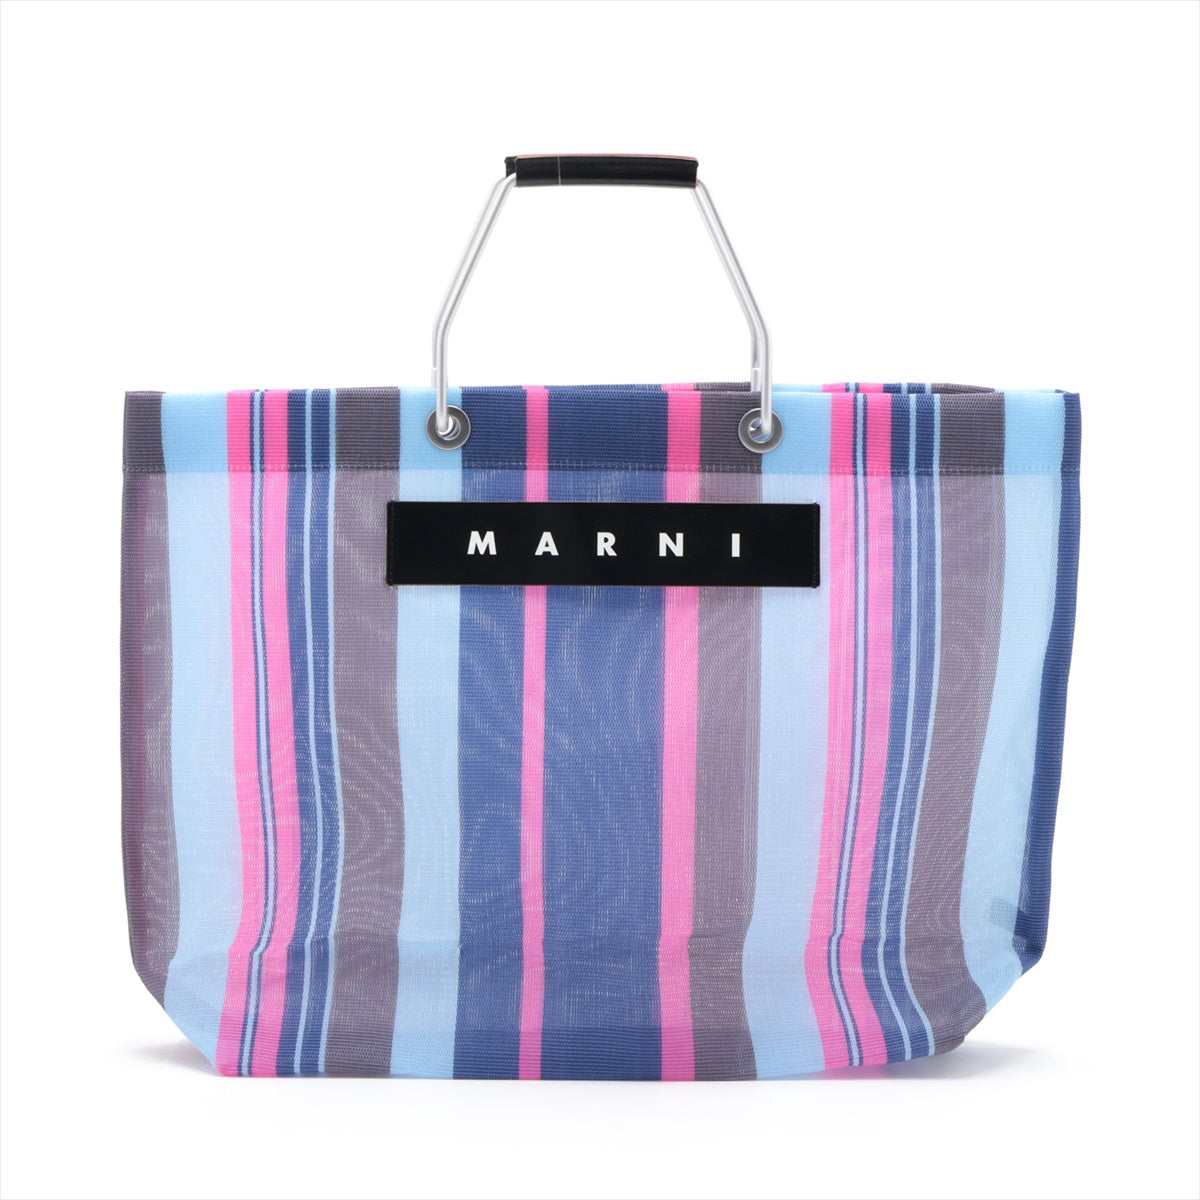 Marni Flower Cafe  Vinyl Tote Bag Multi-Color